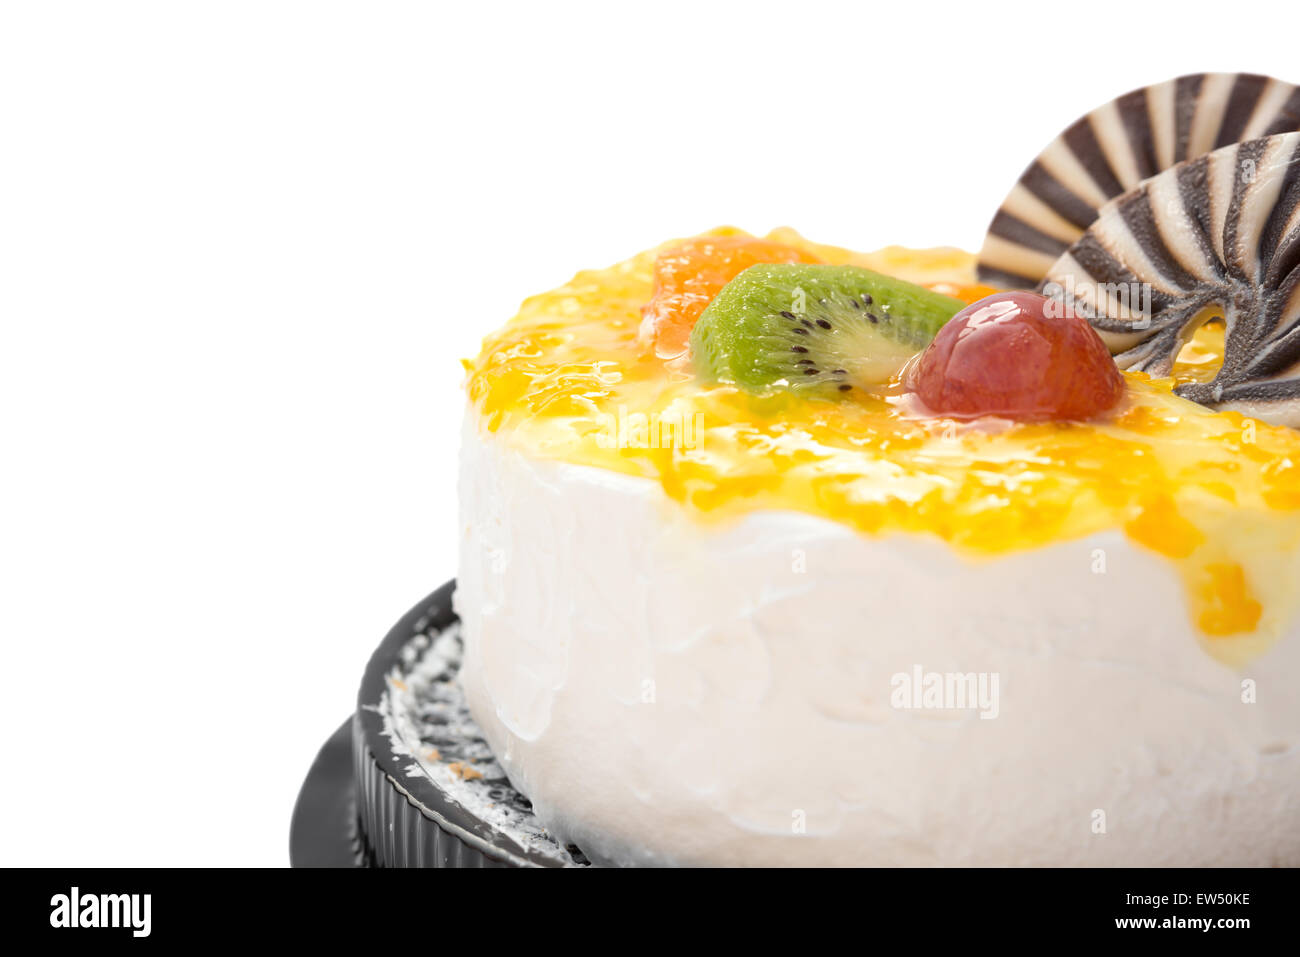 leckeren Kuchen auf weiß mit Traube orange Kiwi und Schokolade am besten, Clipping-Pfad enthalten Stockfoto